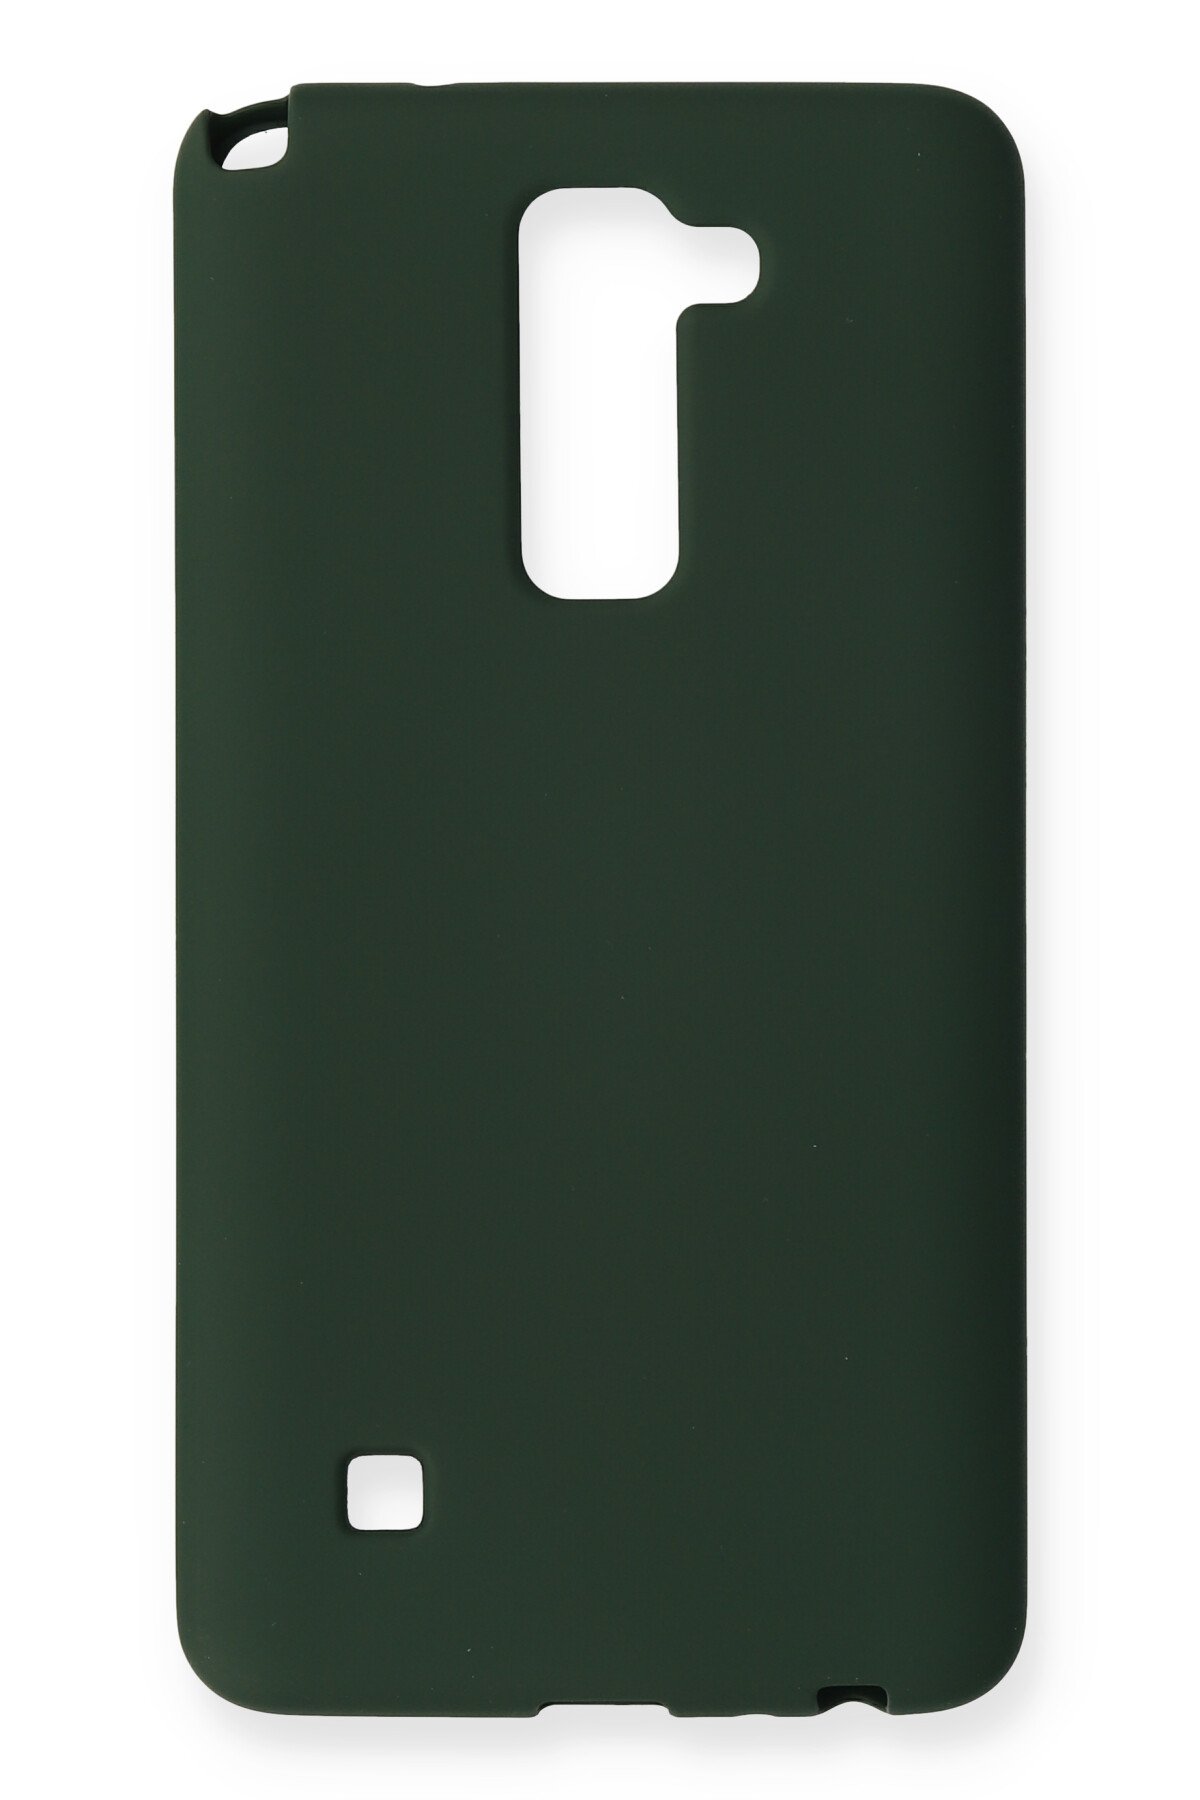 Newface LG Stylus 2 Kılıf First Silikon - Koyu Yeşil